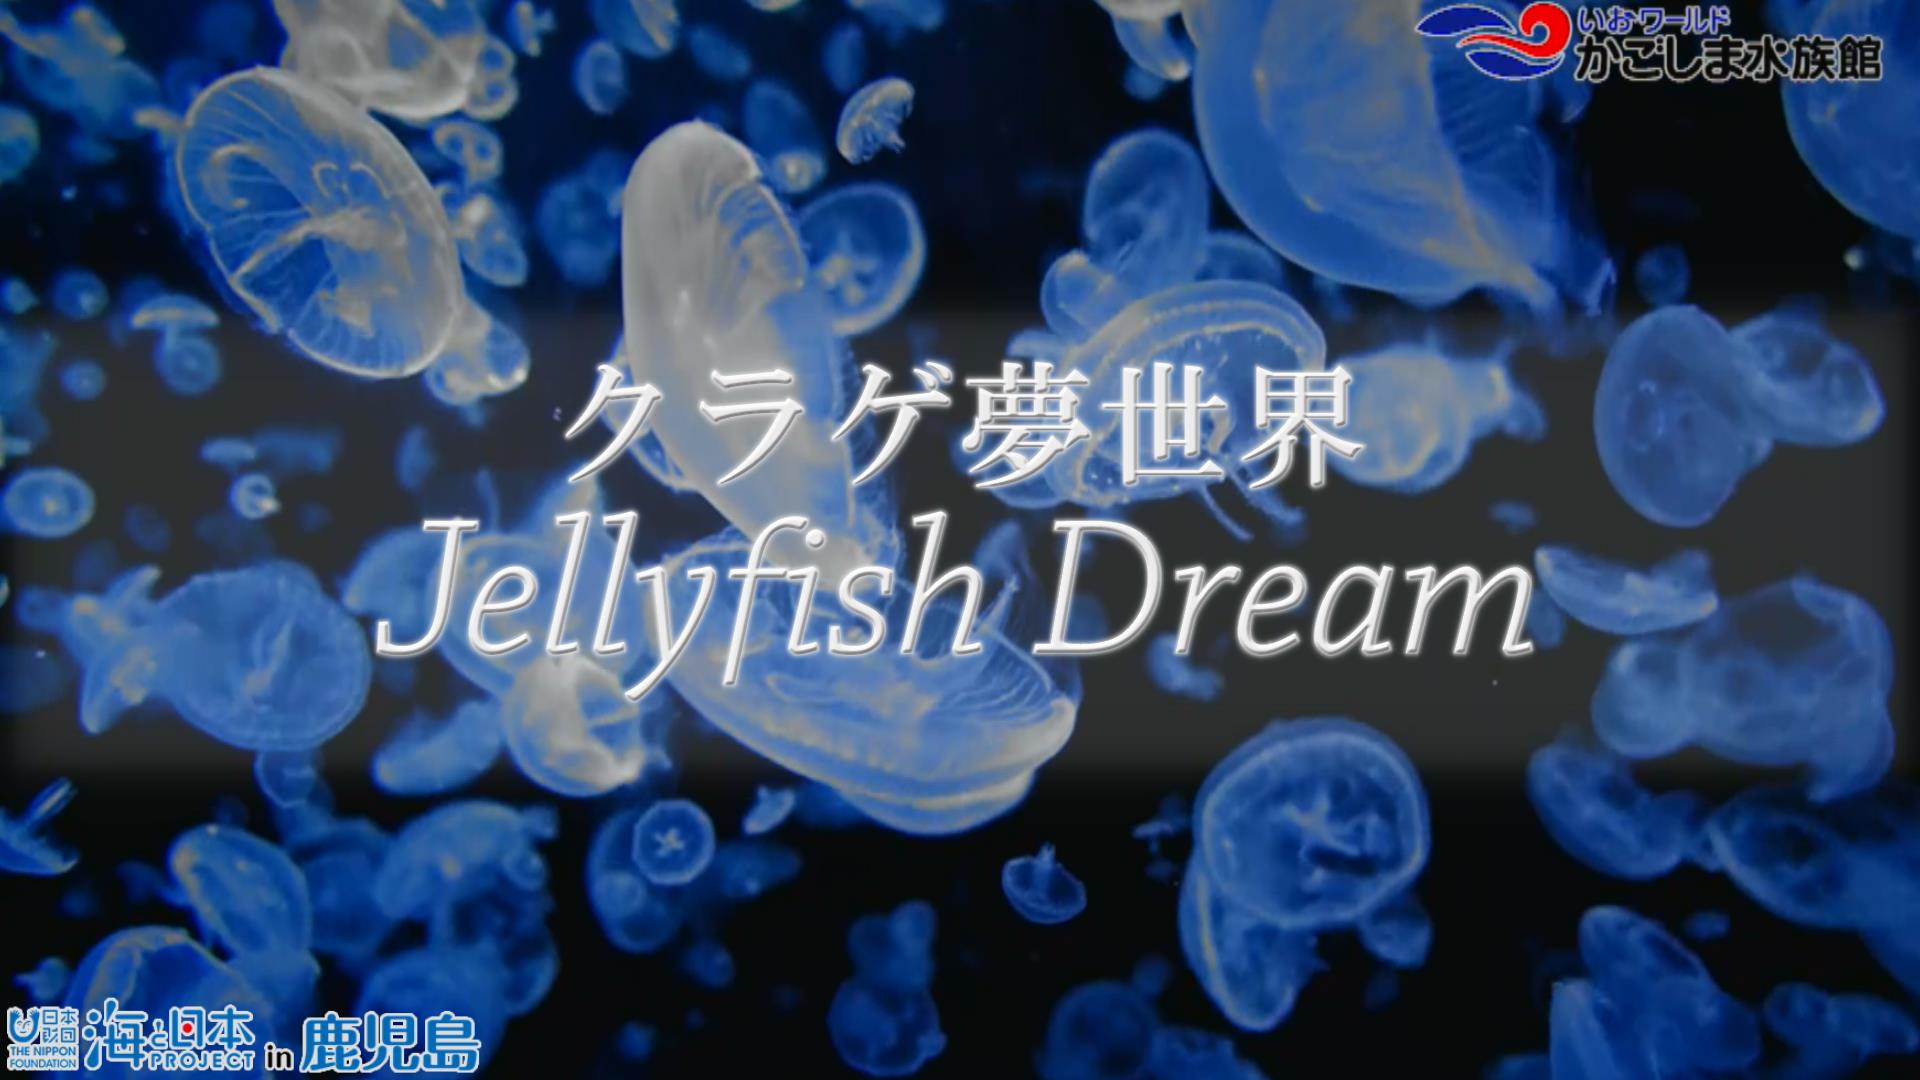 【おうちで水族館】『JellyfishDream~クラゲ夢世界~』いおワールド かごしま水族館×海と日本PROJECT in 鹿児島